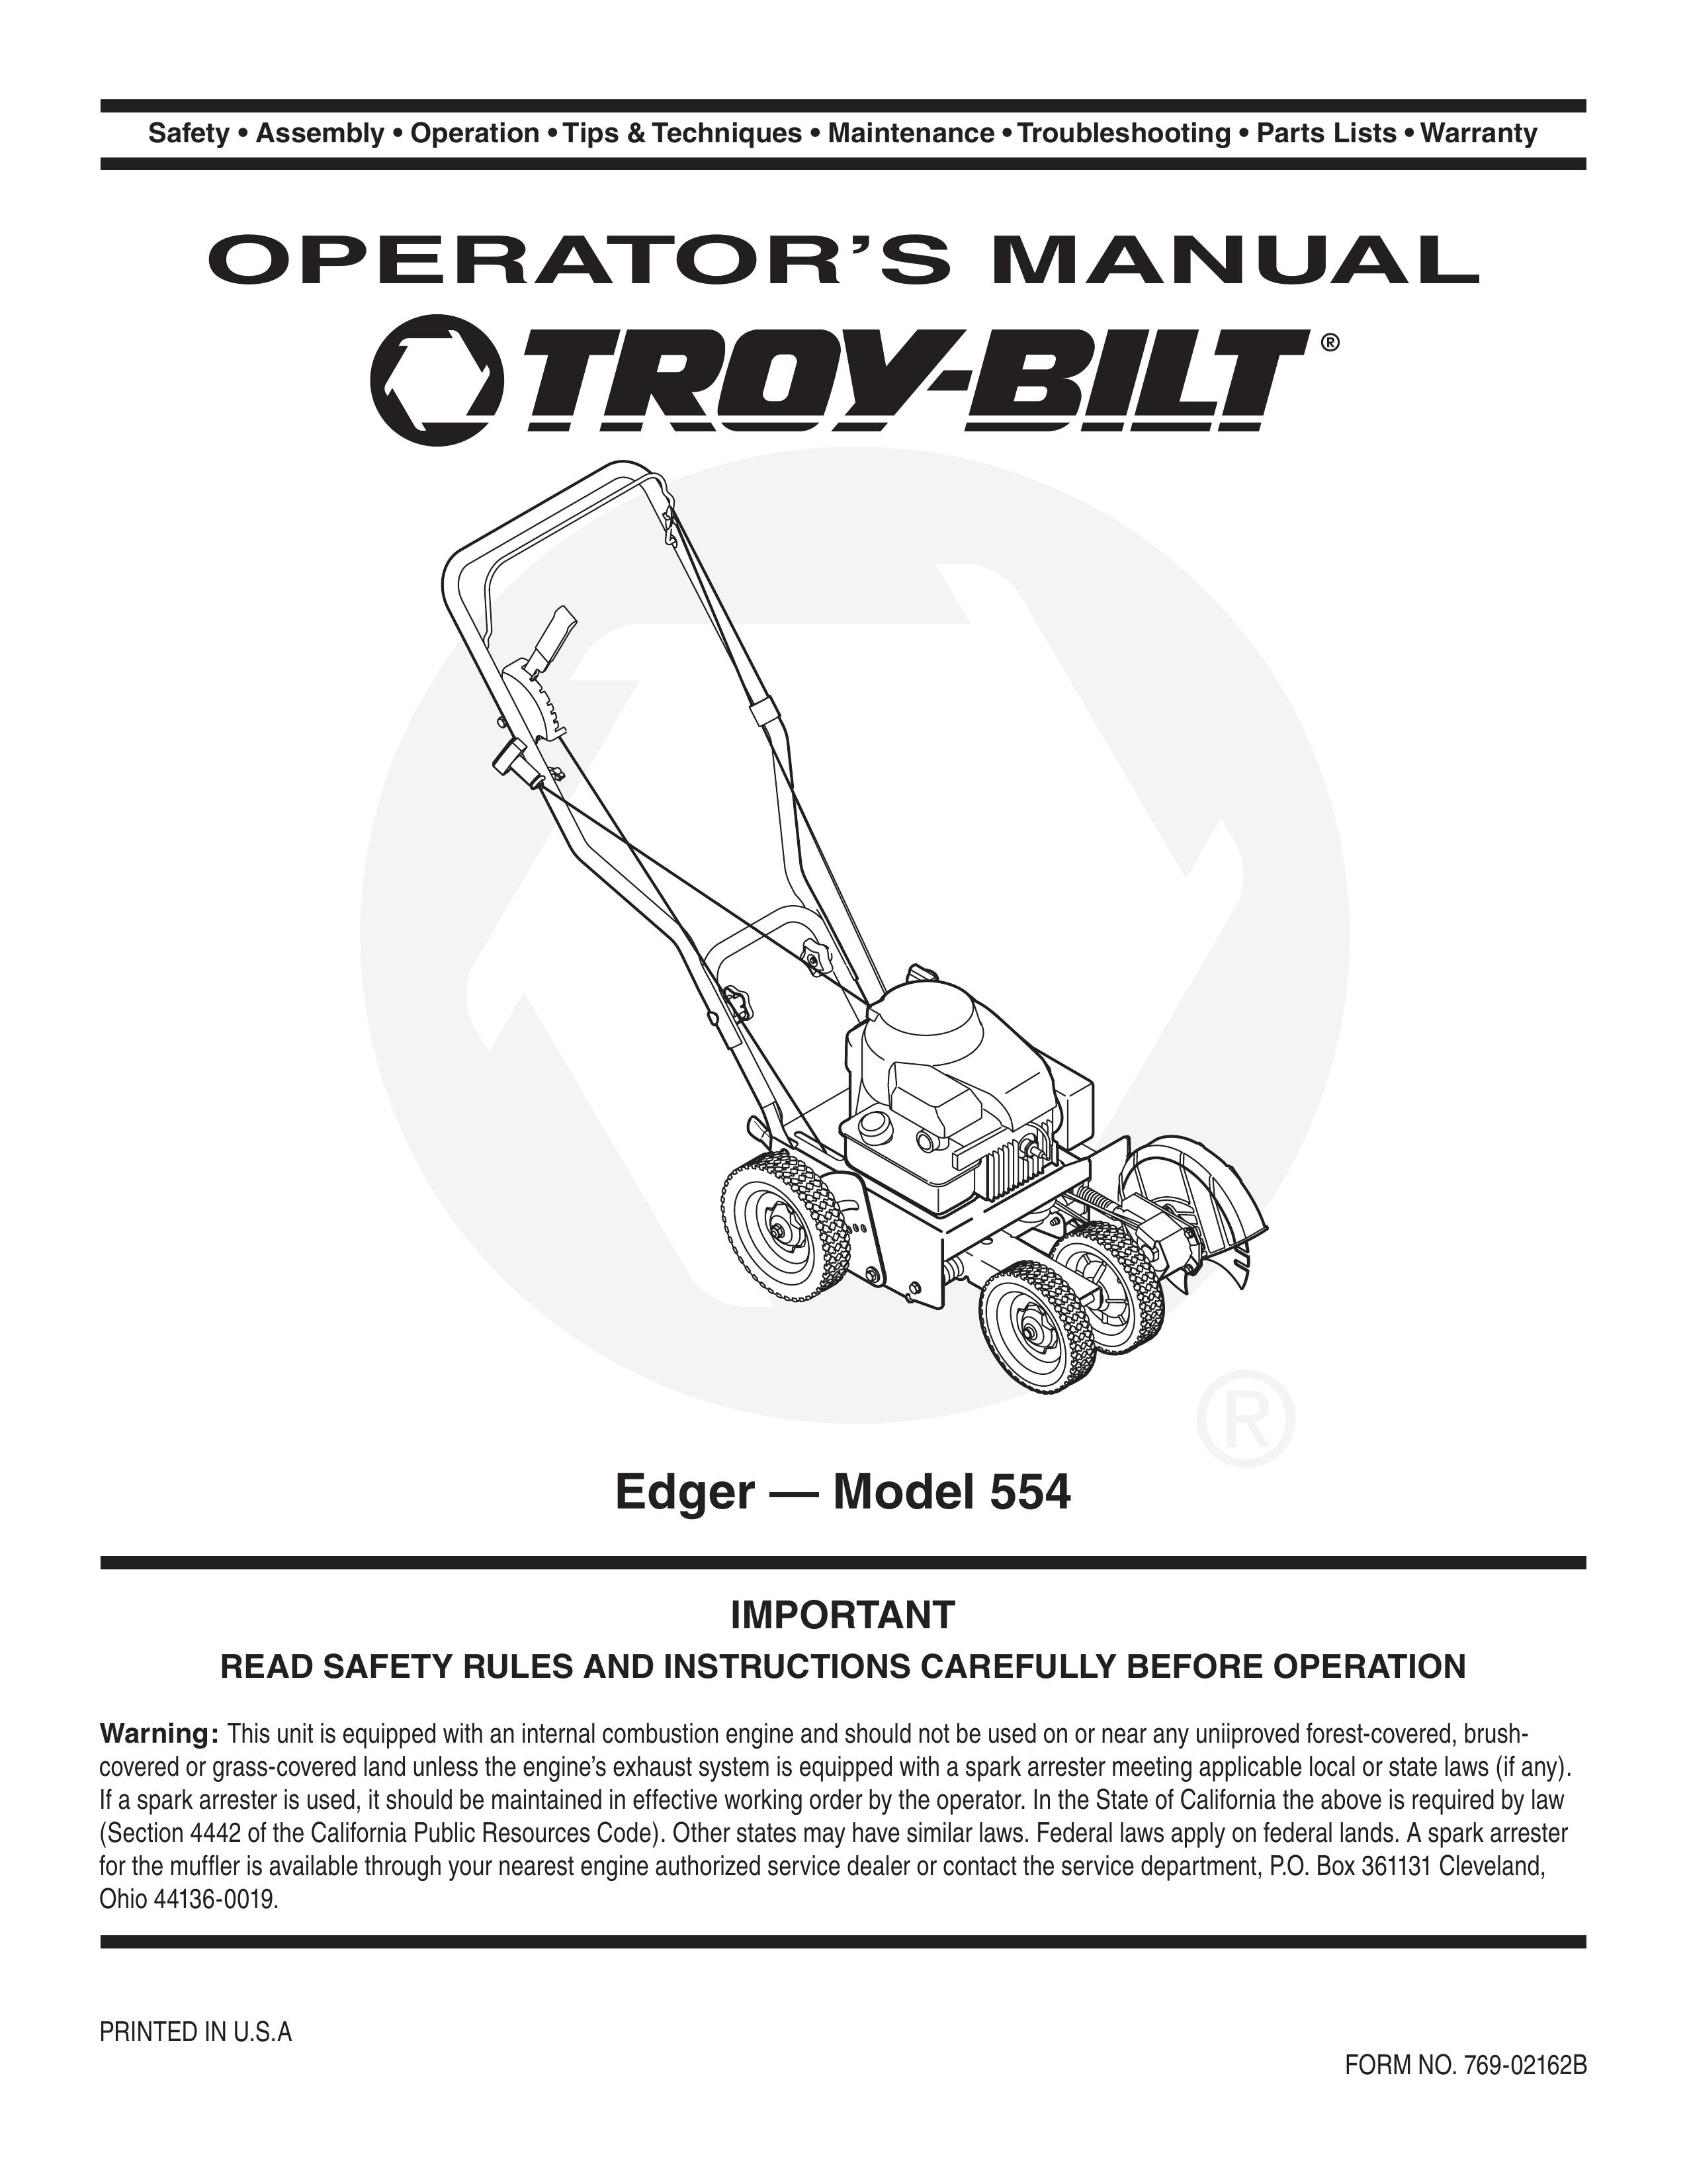 Troy-Bilt 554 Edger User Manual